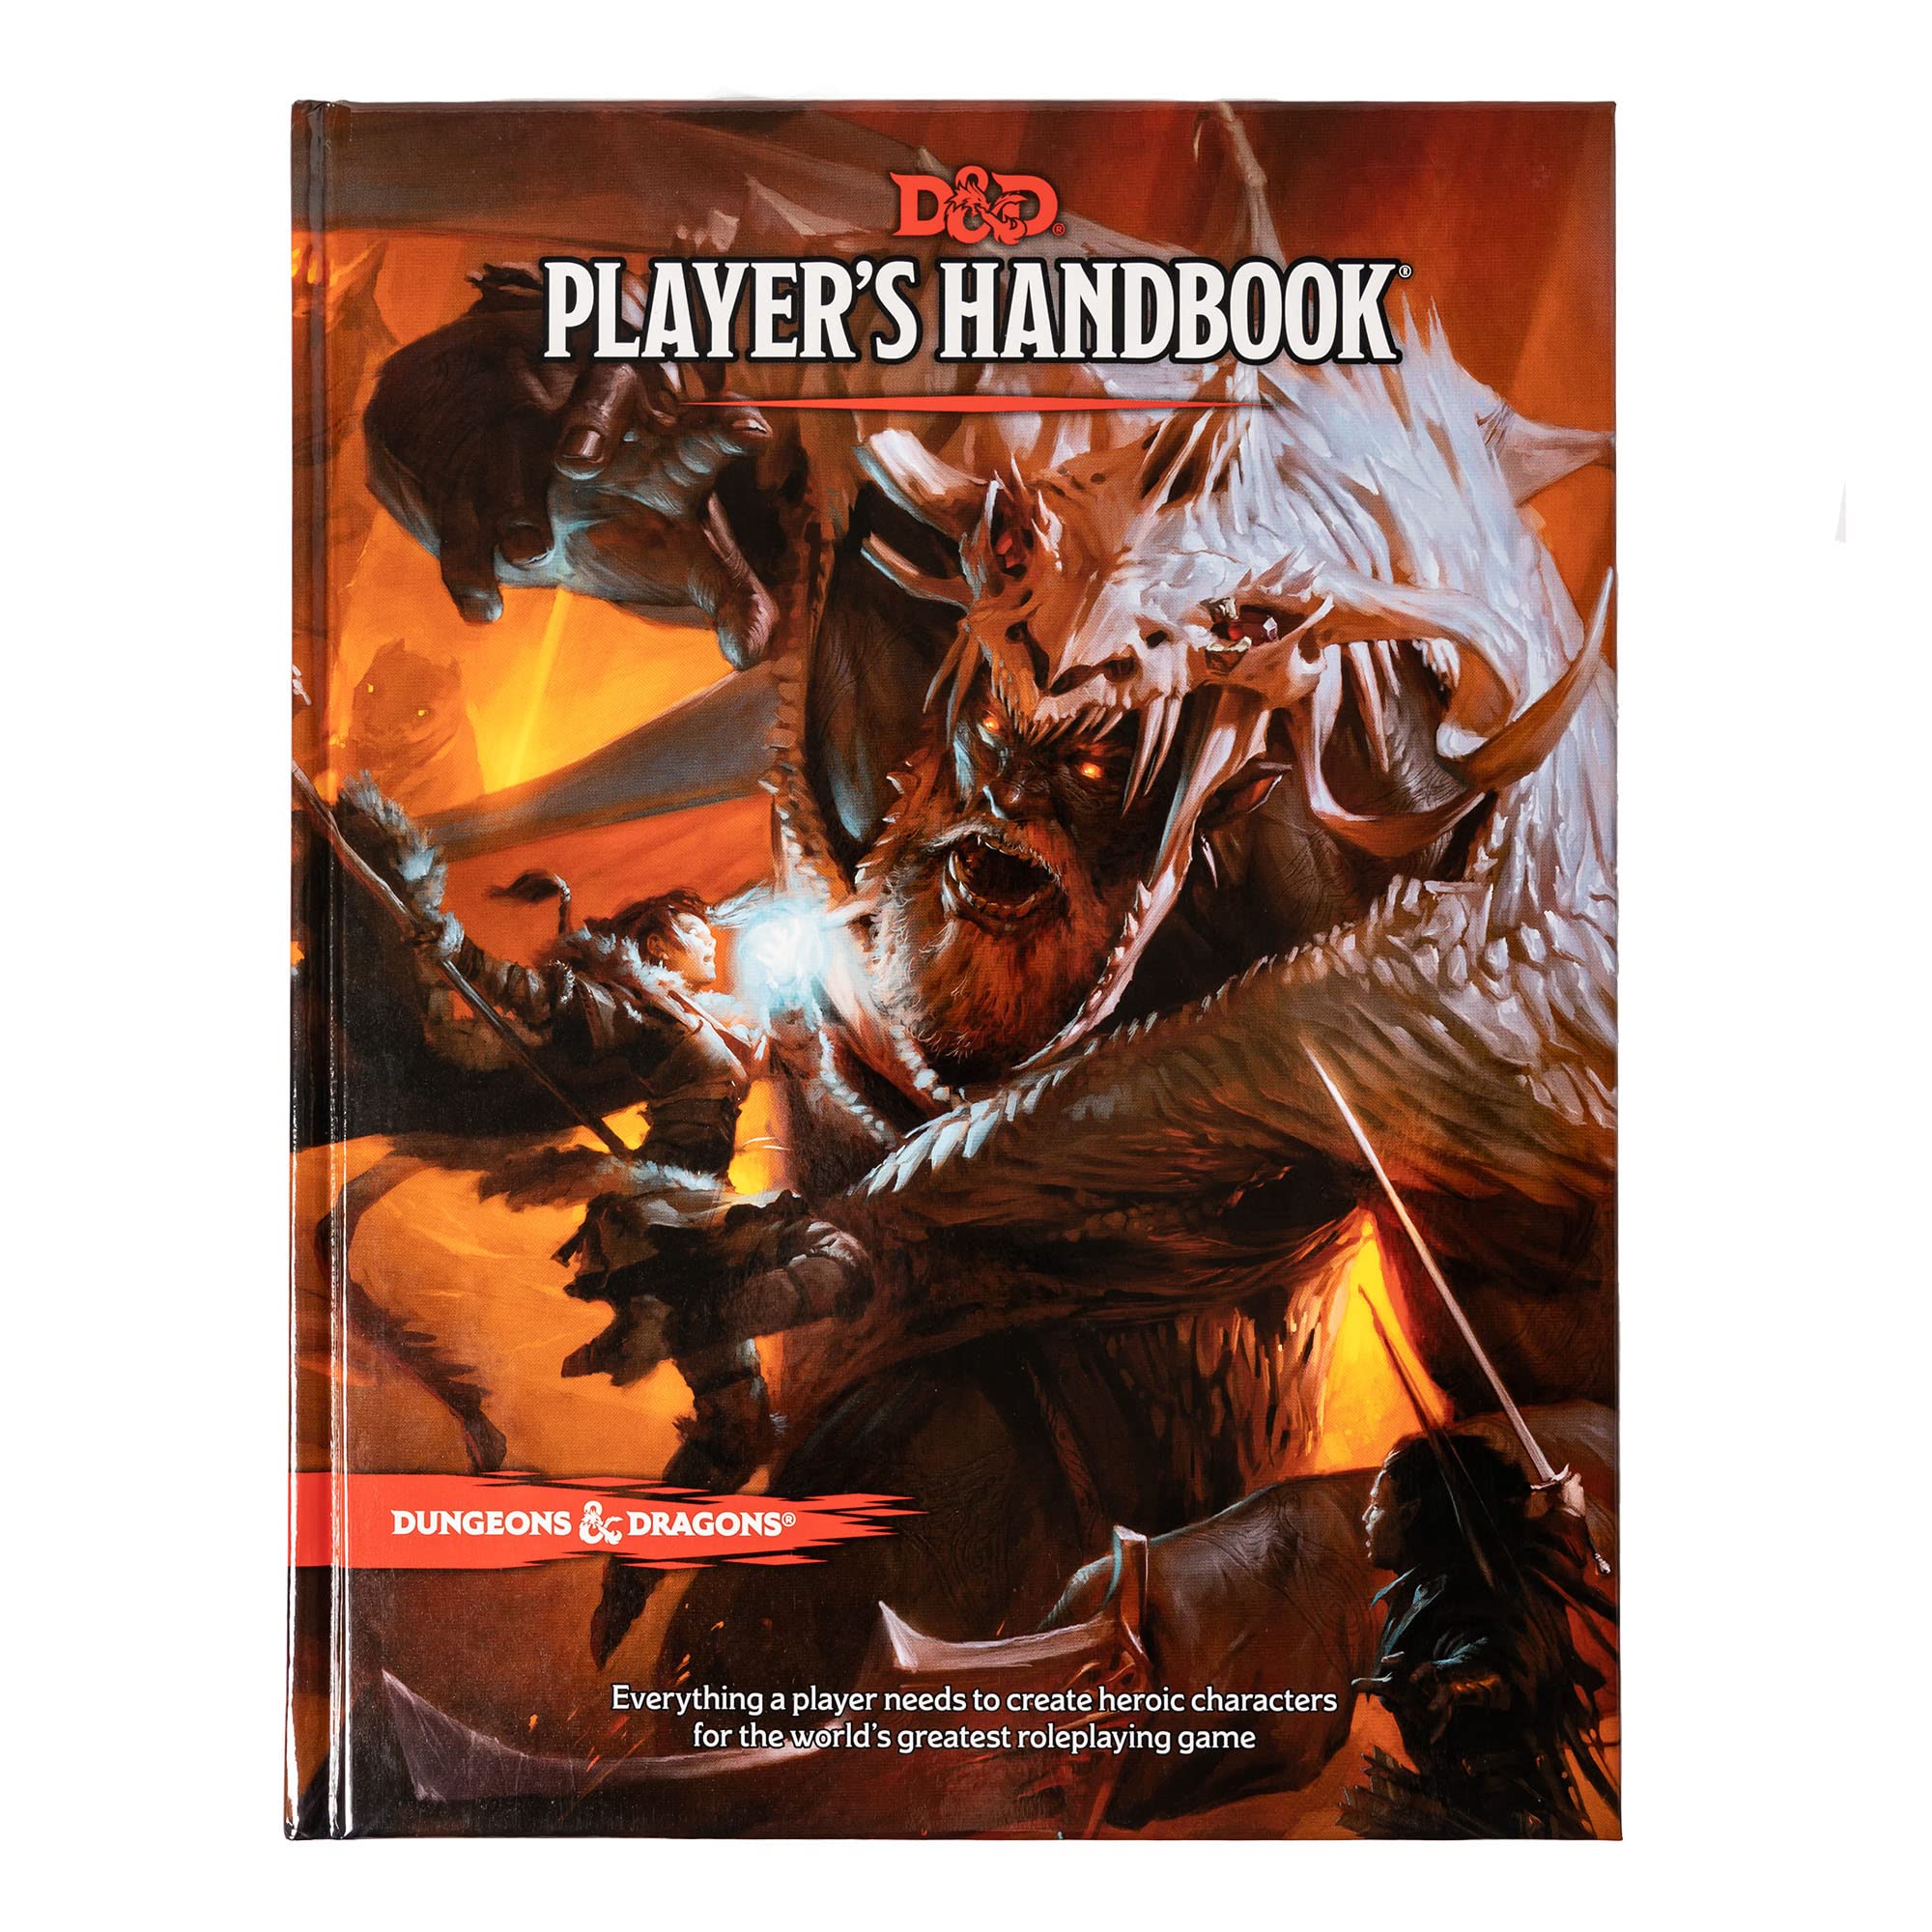 Mua D&D Player’s Handbook (Dungeons & Dragons Core Rulebook) trên